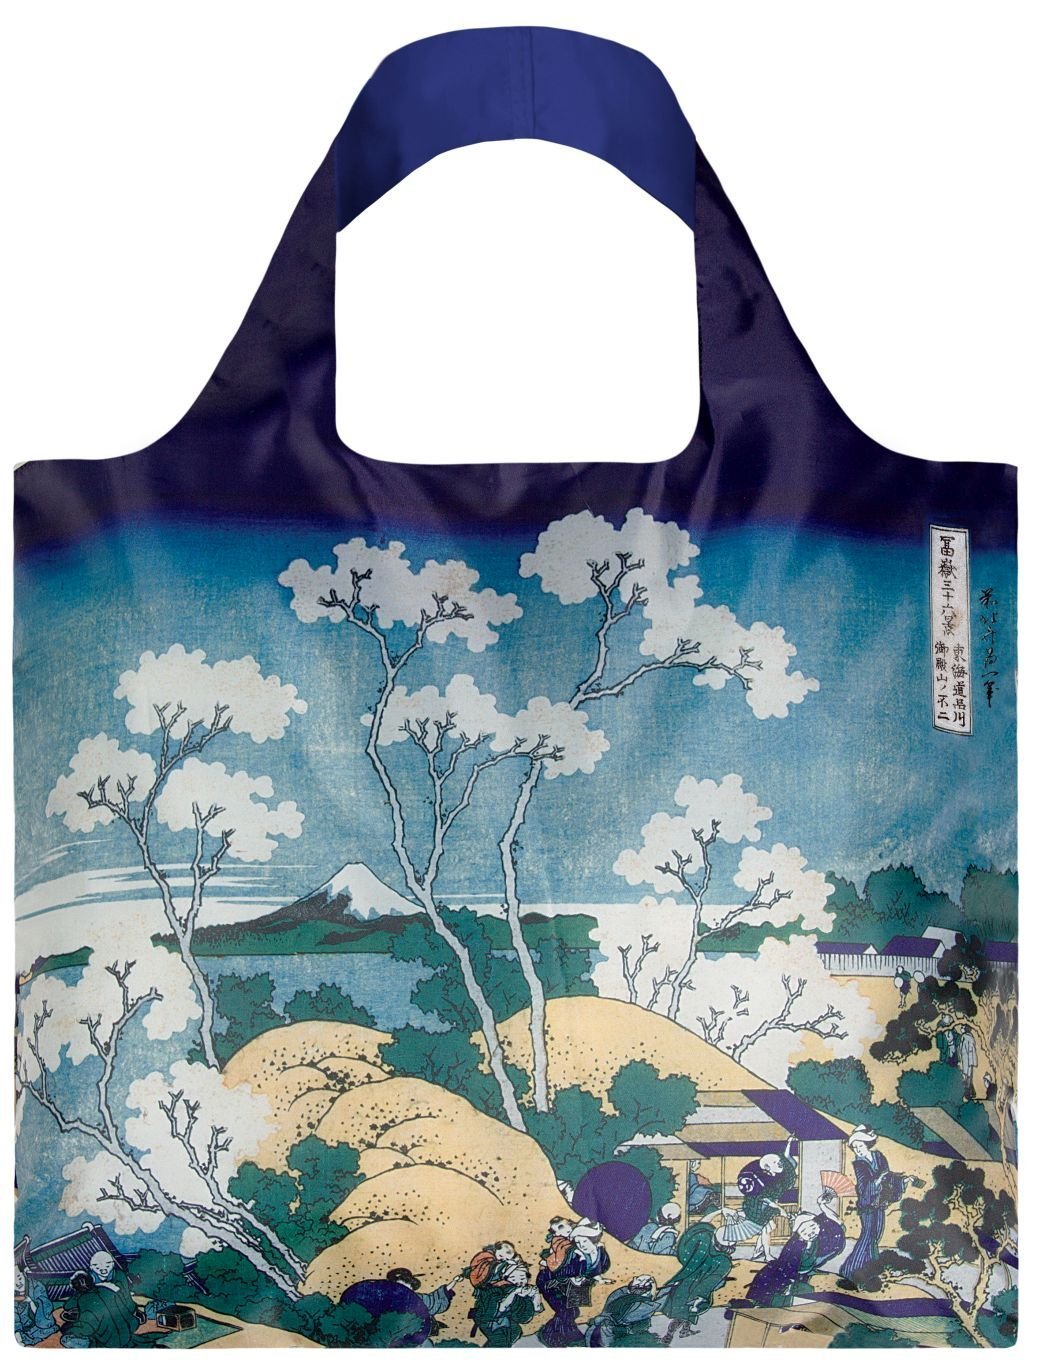 LOQI Museum Hokusai's Fuji from Gotenyama Reusable Shopping Bag